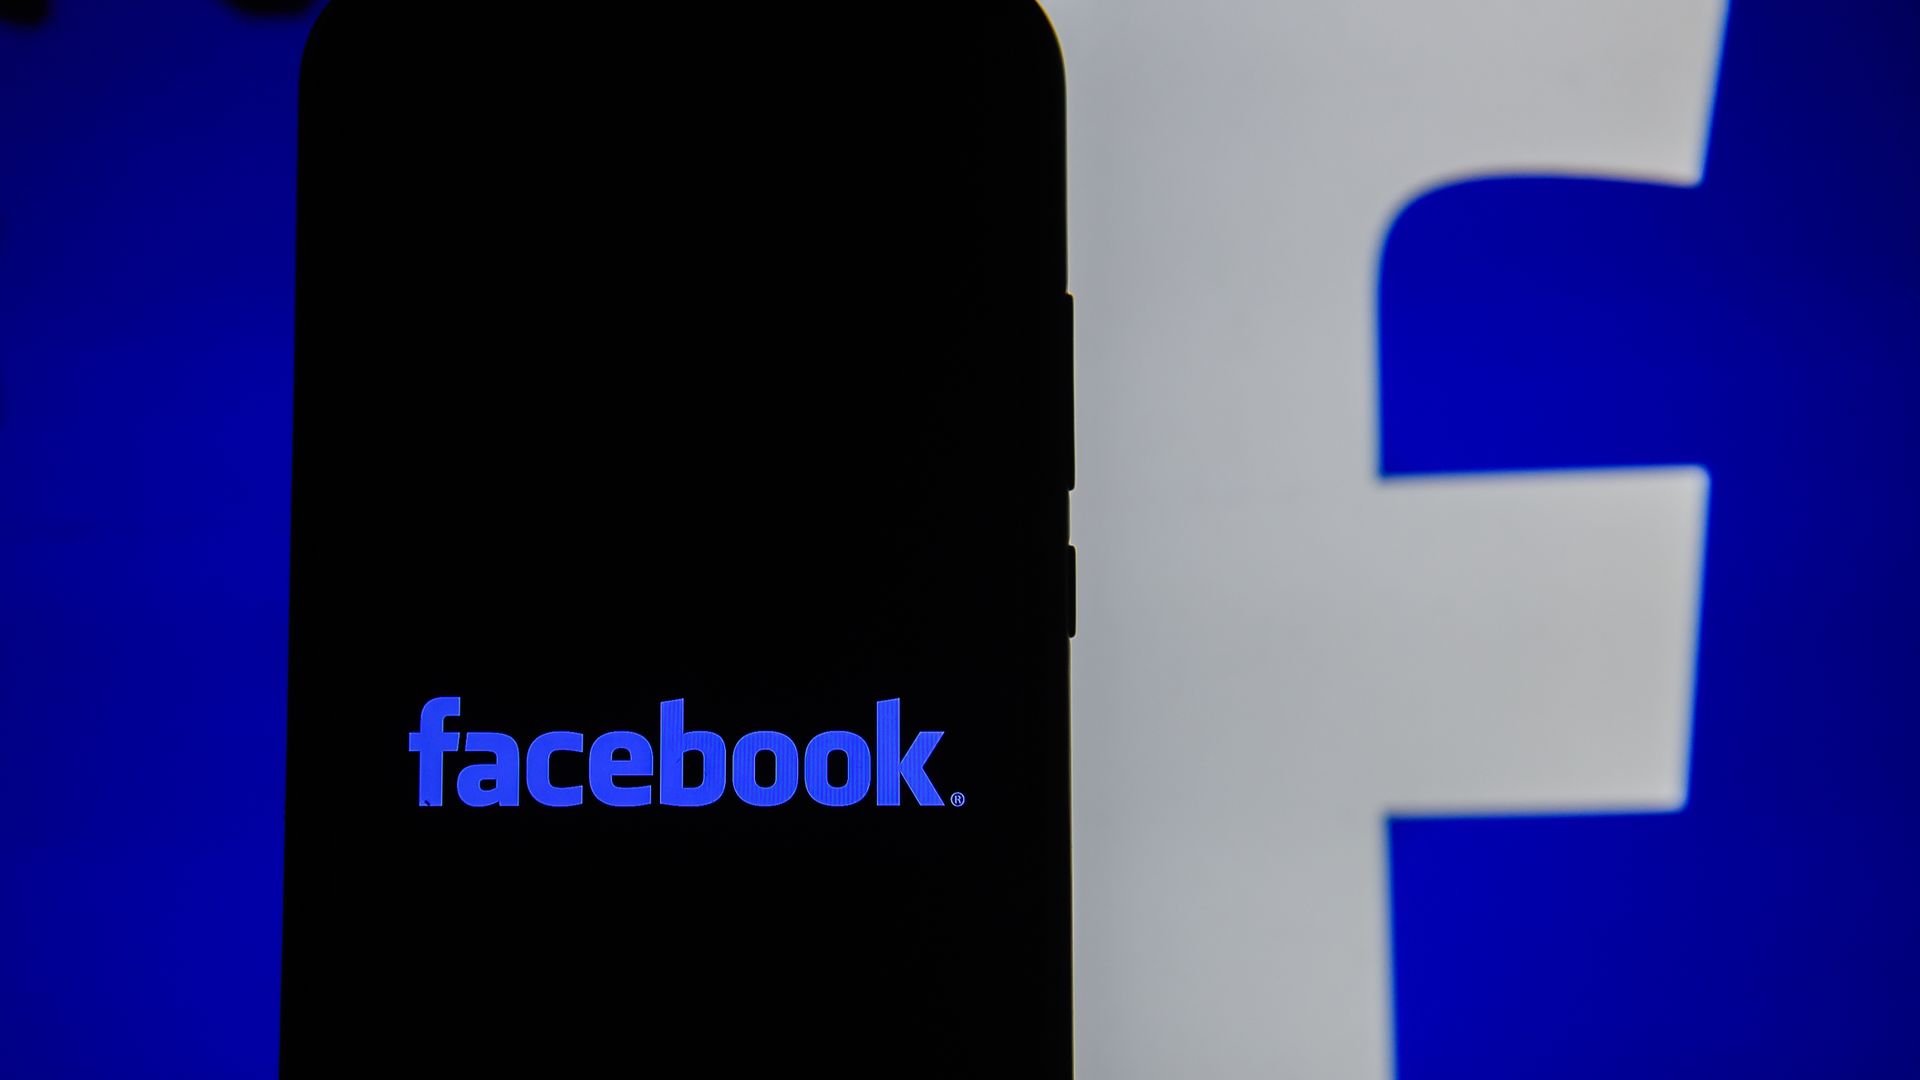 Facebook logo on a phone screen